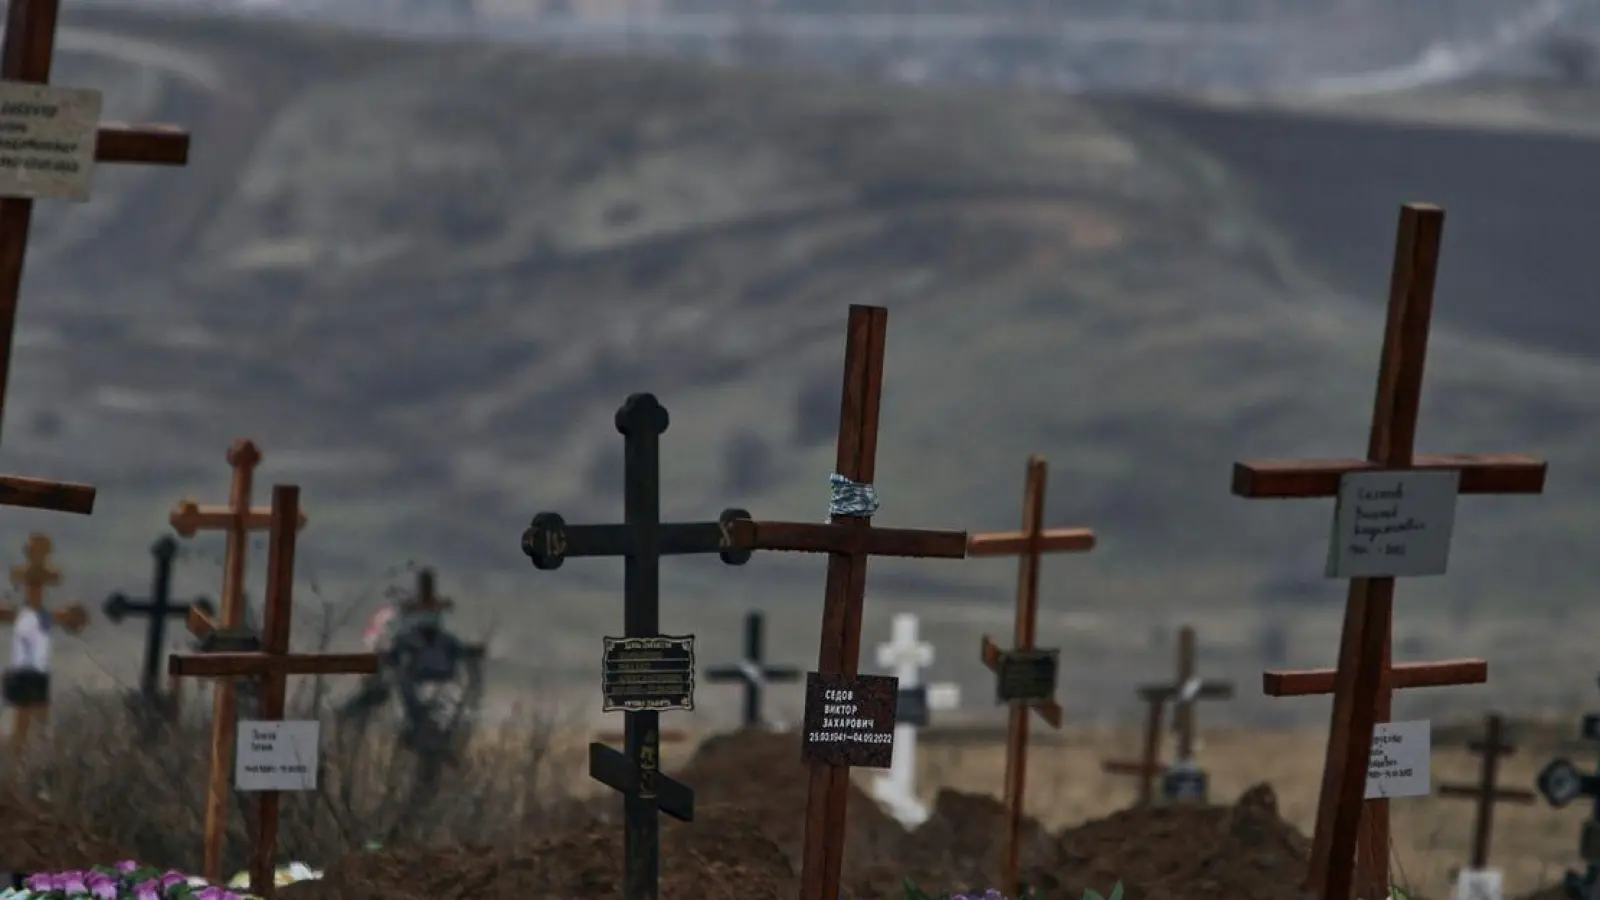 Gräber von gefallenen Soldaten auf einem Friedhof. (Foto: Libkos/AP/dpa)